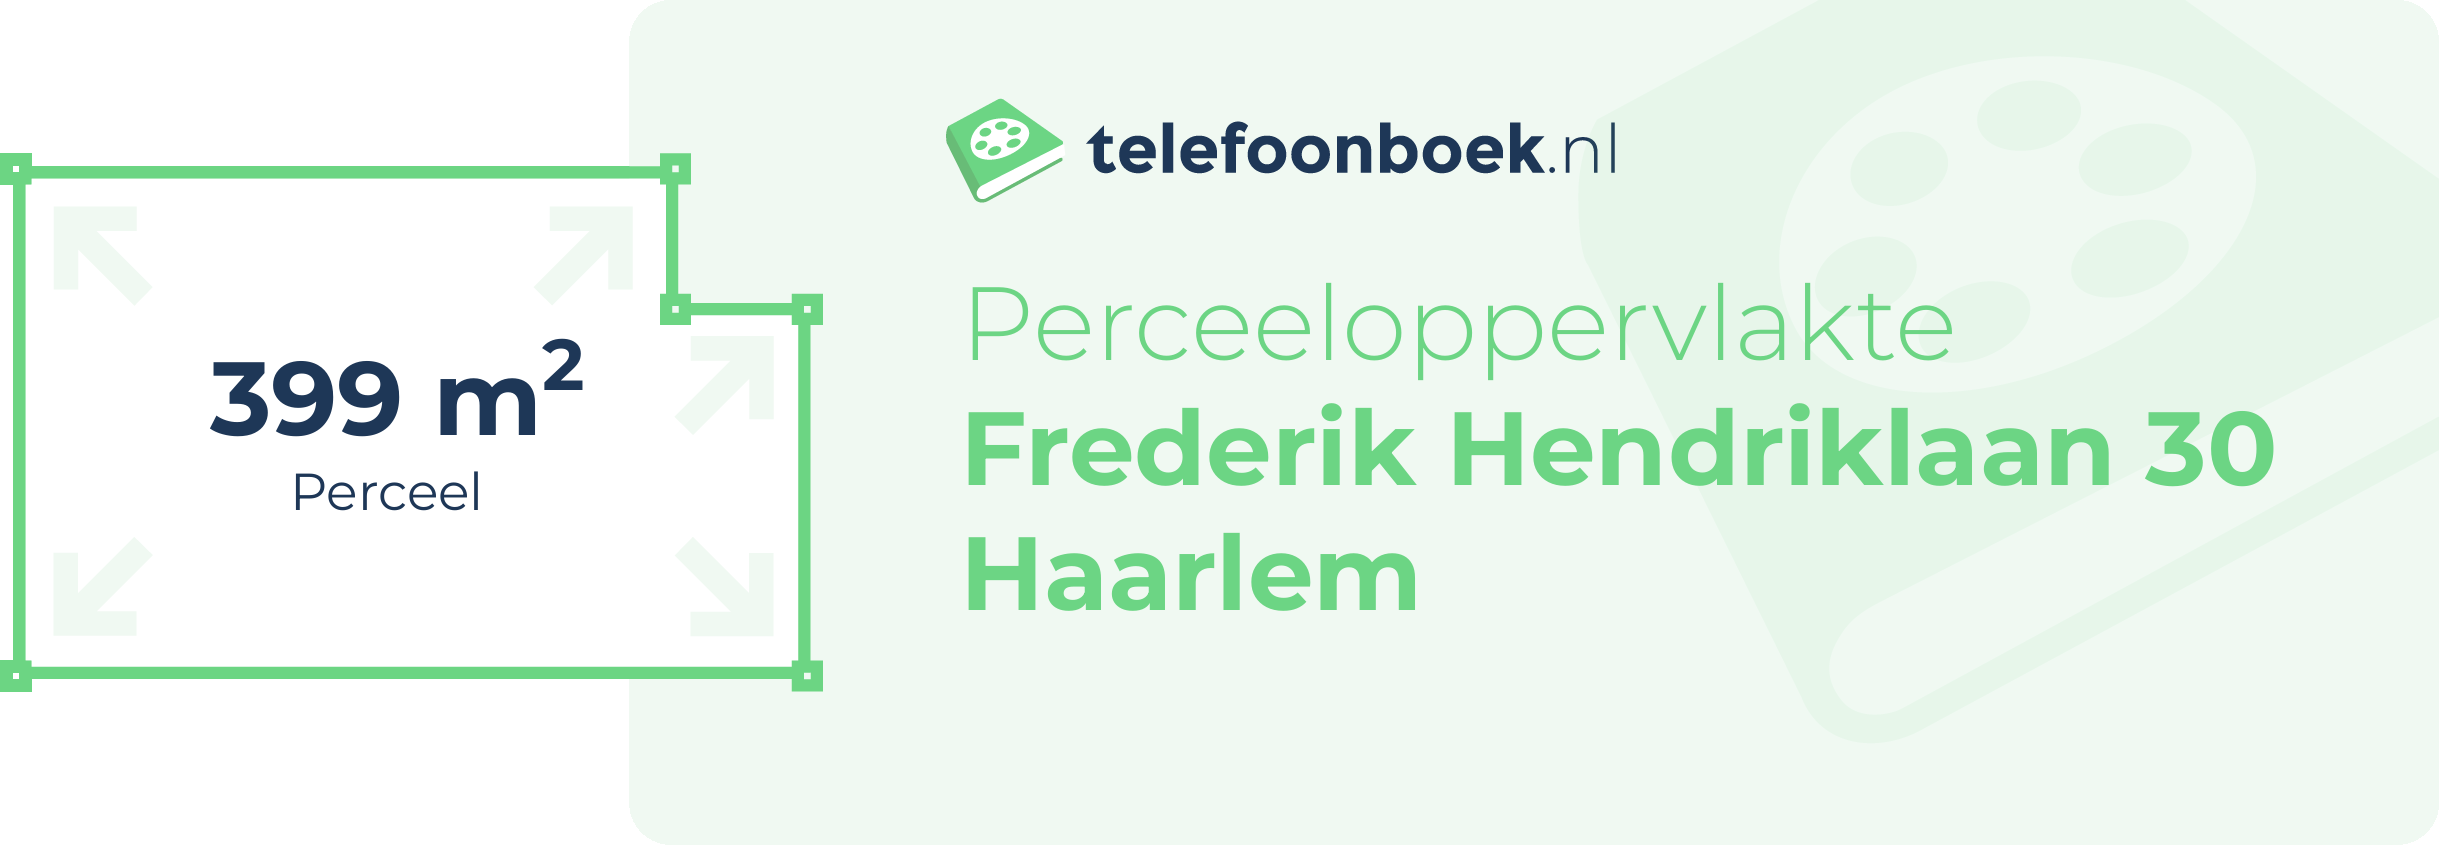 Perceeloppervlakte Frederik Hendriklaan 30 Haarlem